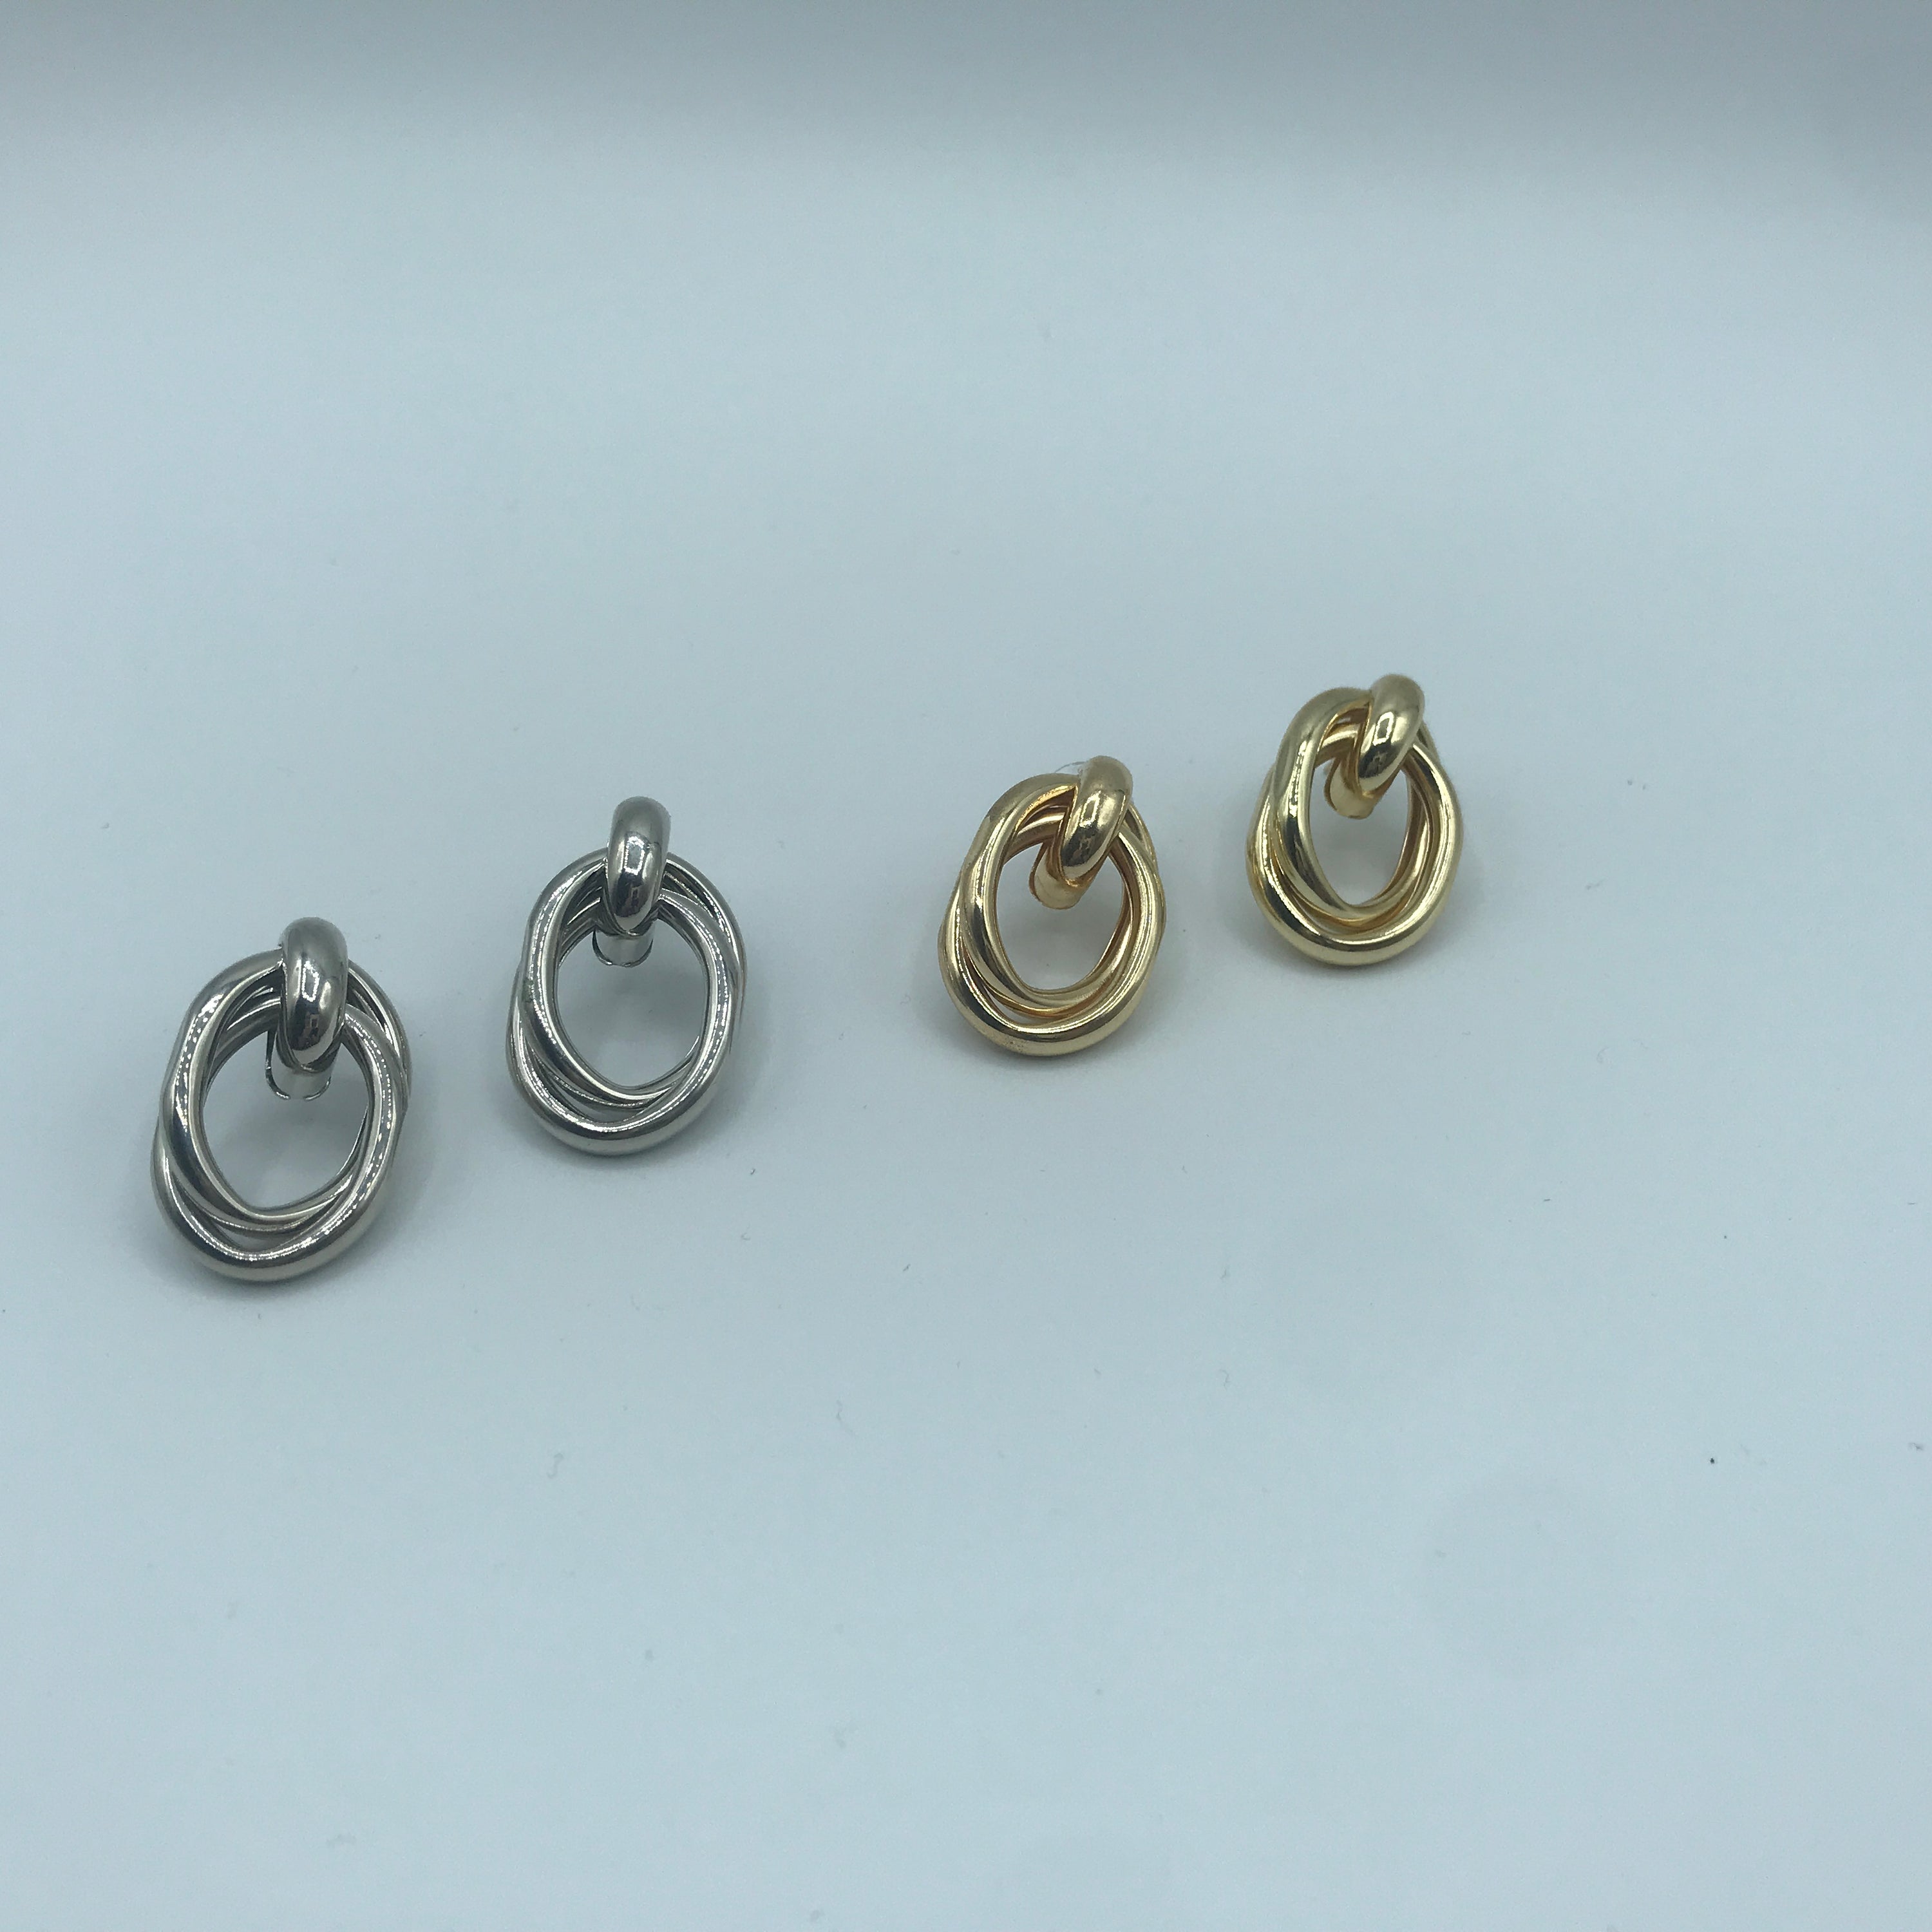 Steel Alloy Crossed Oval Hoop Earrings - 3.7cm, 12g - Jewelry & Watches - Bijou Her -  -  - 